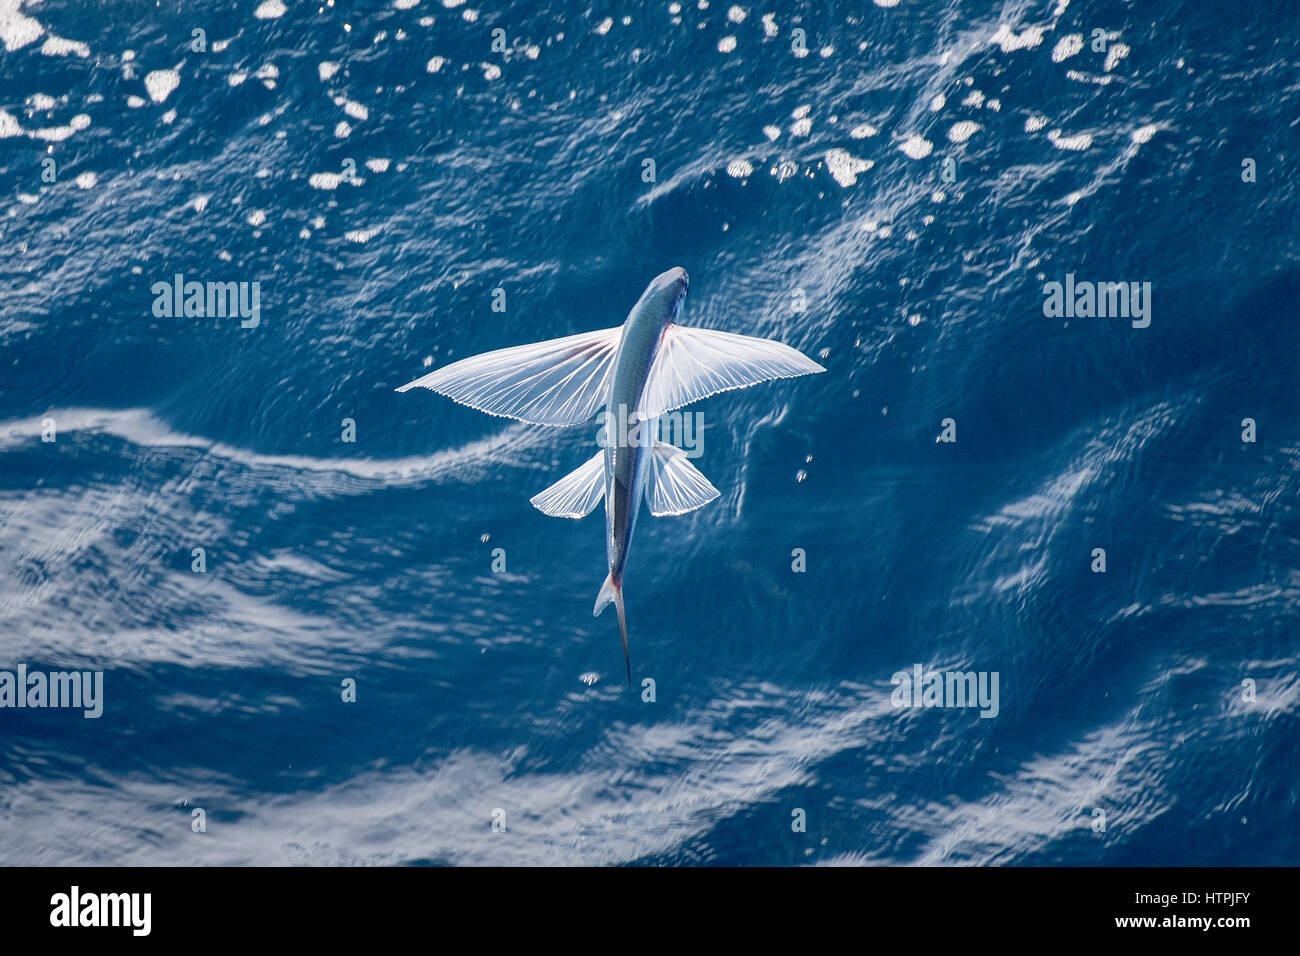 Les espèces de poissons volants dans les airs, nom scientifique inconnu, plusieurs centaines de milles au large de la Mauritanie, l'Afrique du Nord, l'océan Atlantique. Banque D'Images